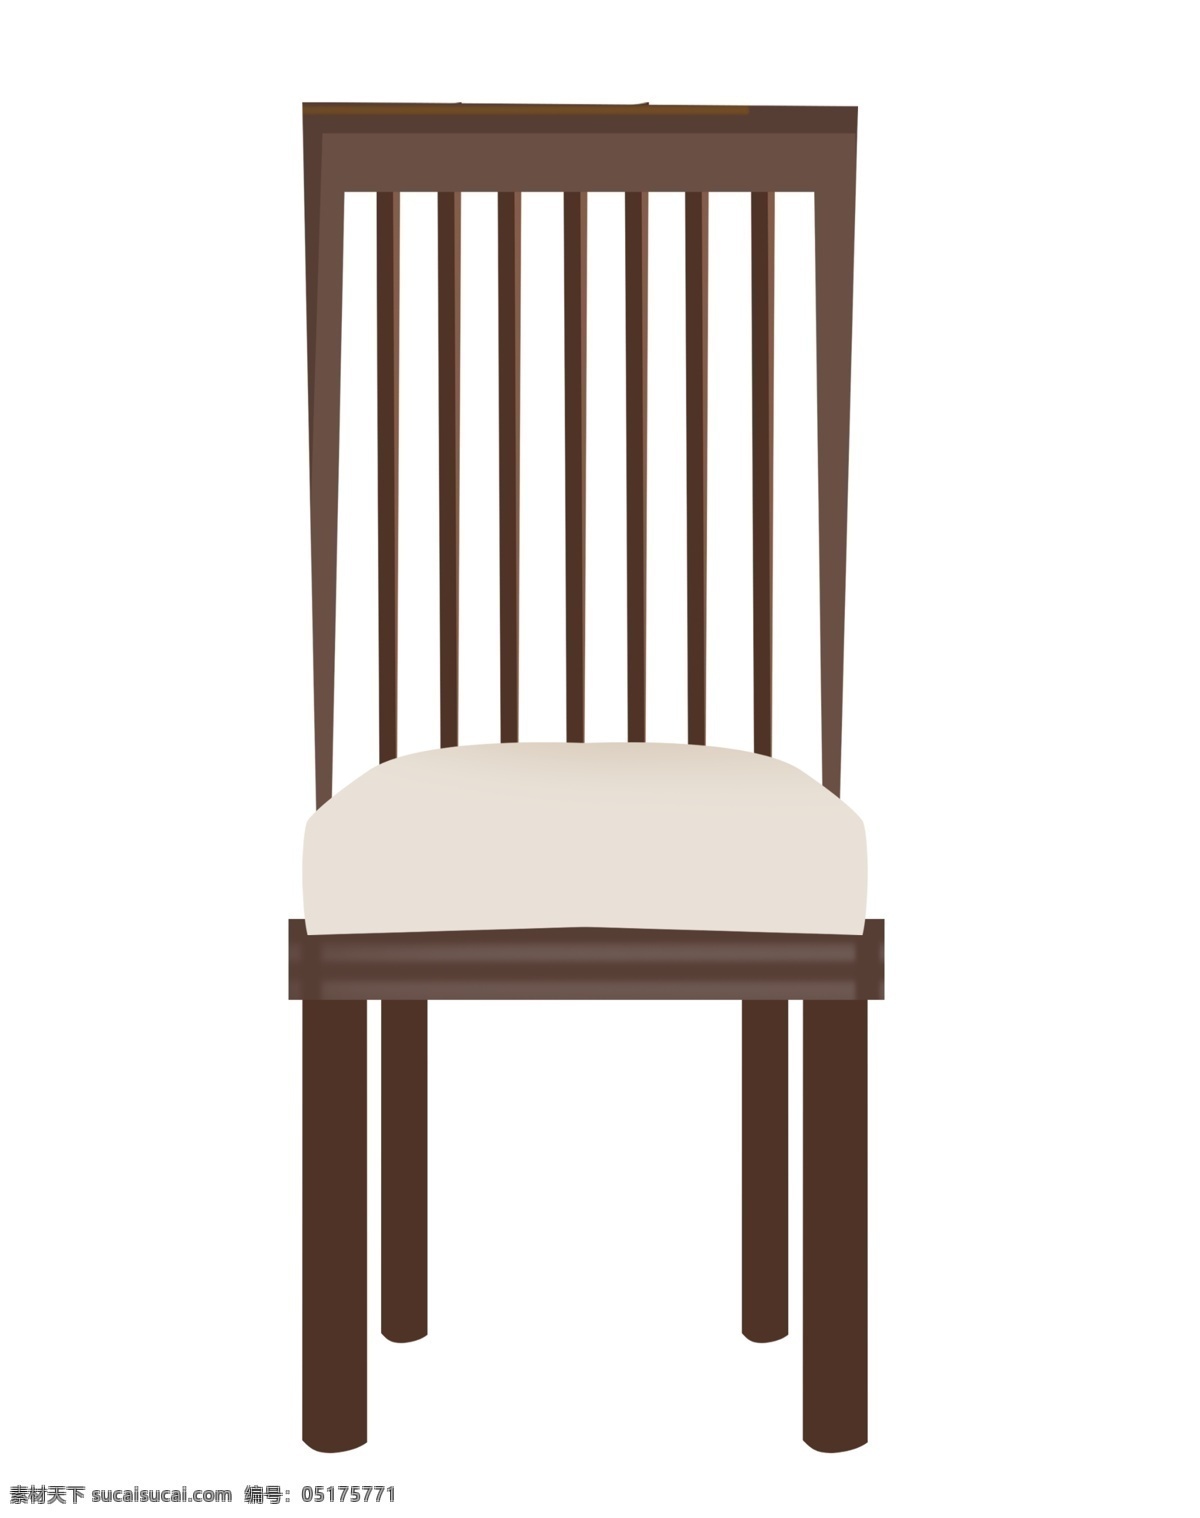 一把 红木 靠背 椅子 一把椅子 红木靠背椅子 红木椅子 木质椅子 家具 卡通椅子 红木椅子插图